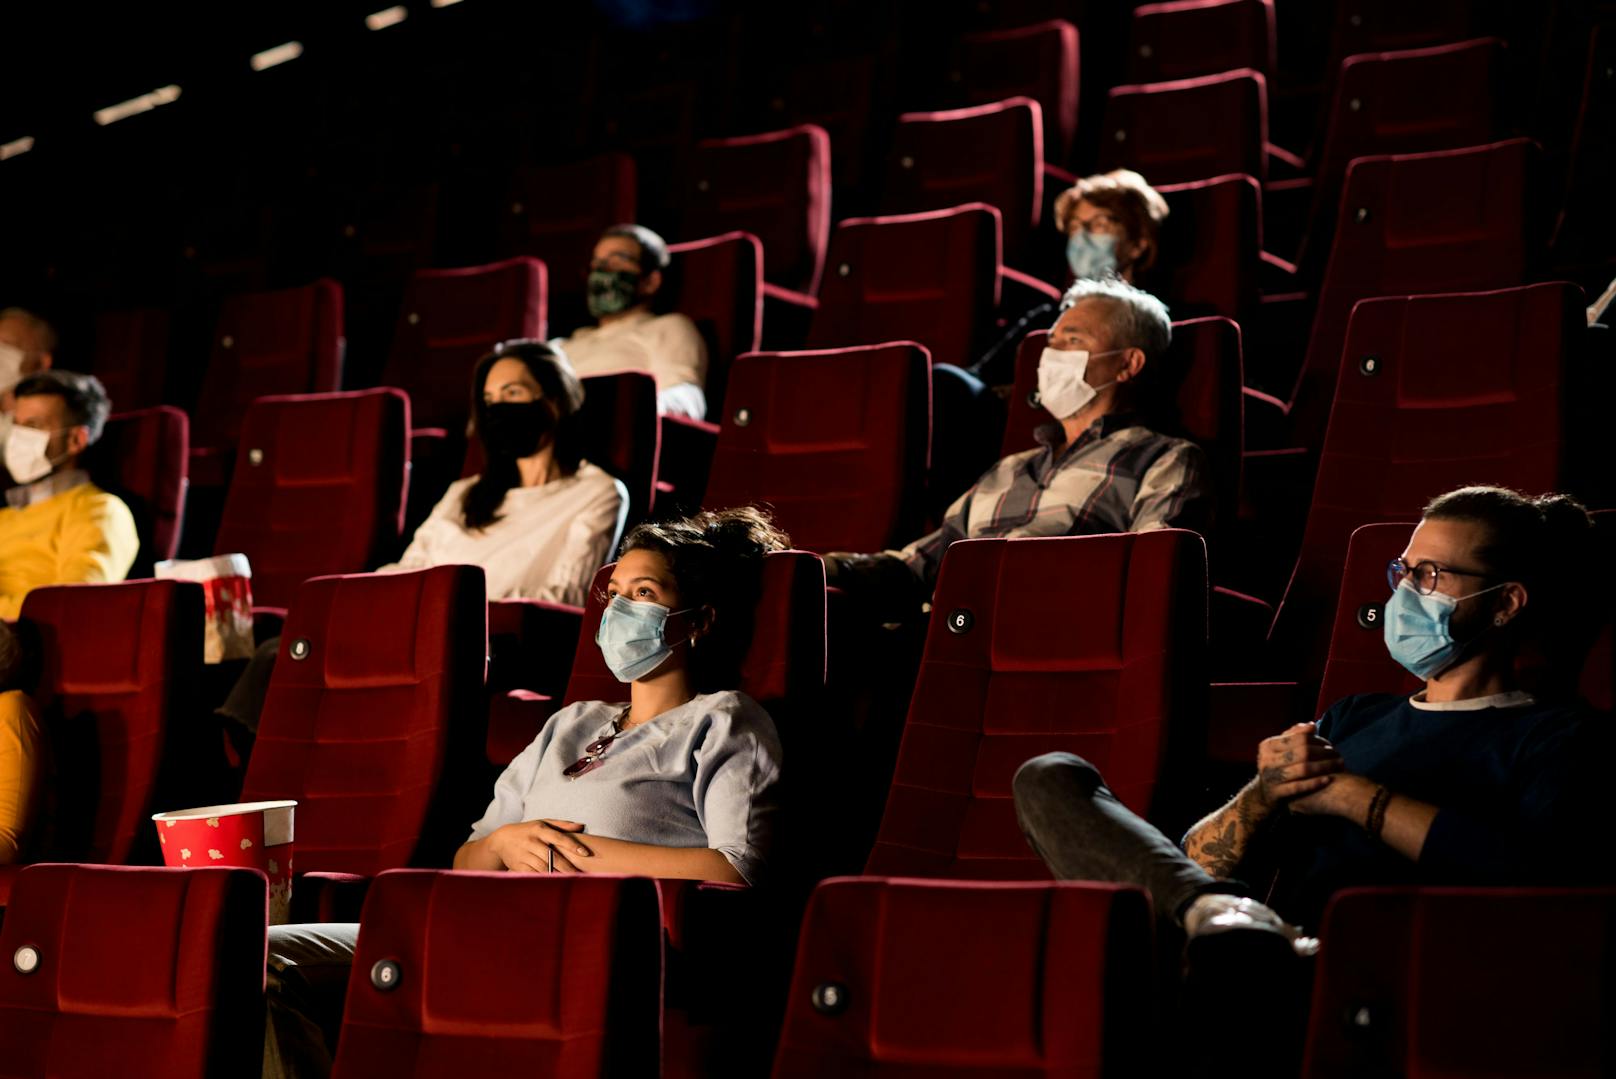 Auch in Kinos muss man in Wien nun wieder Masken tragen.